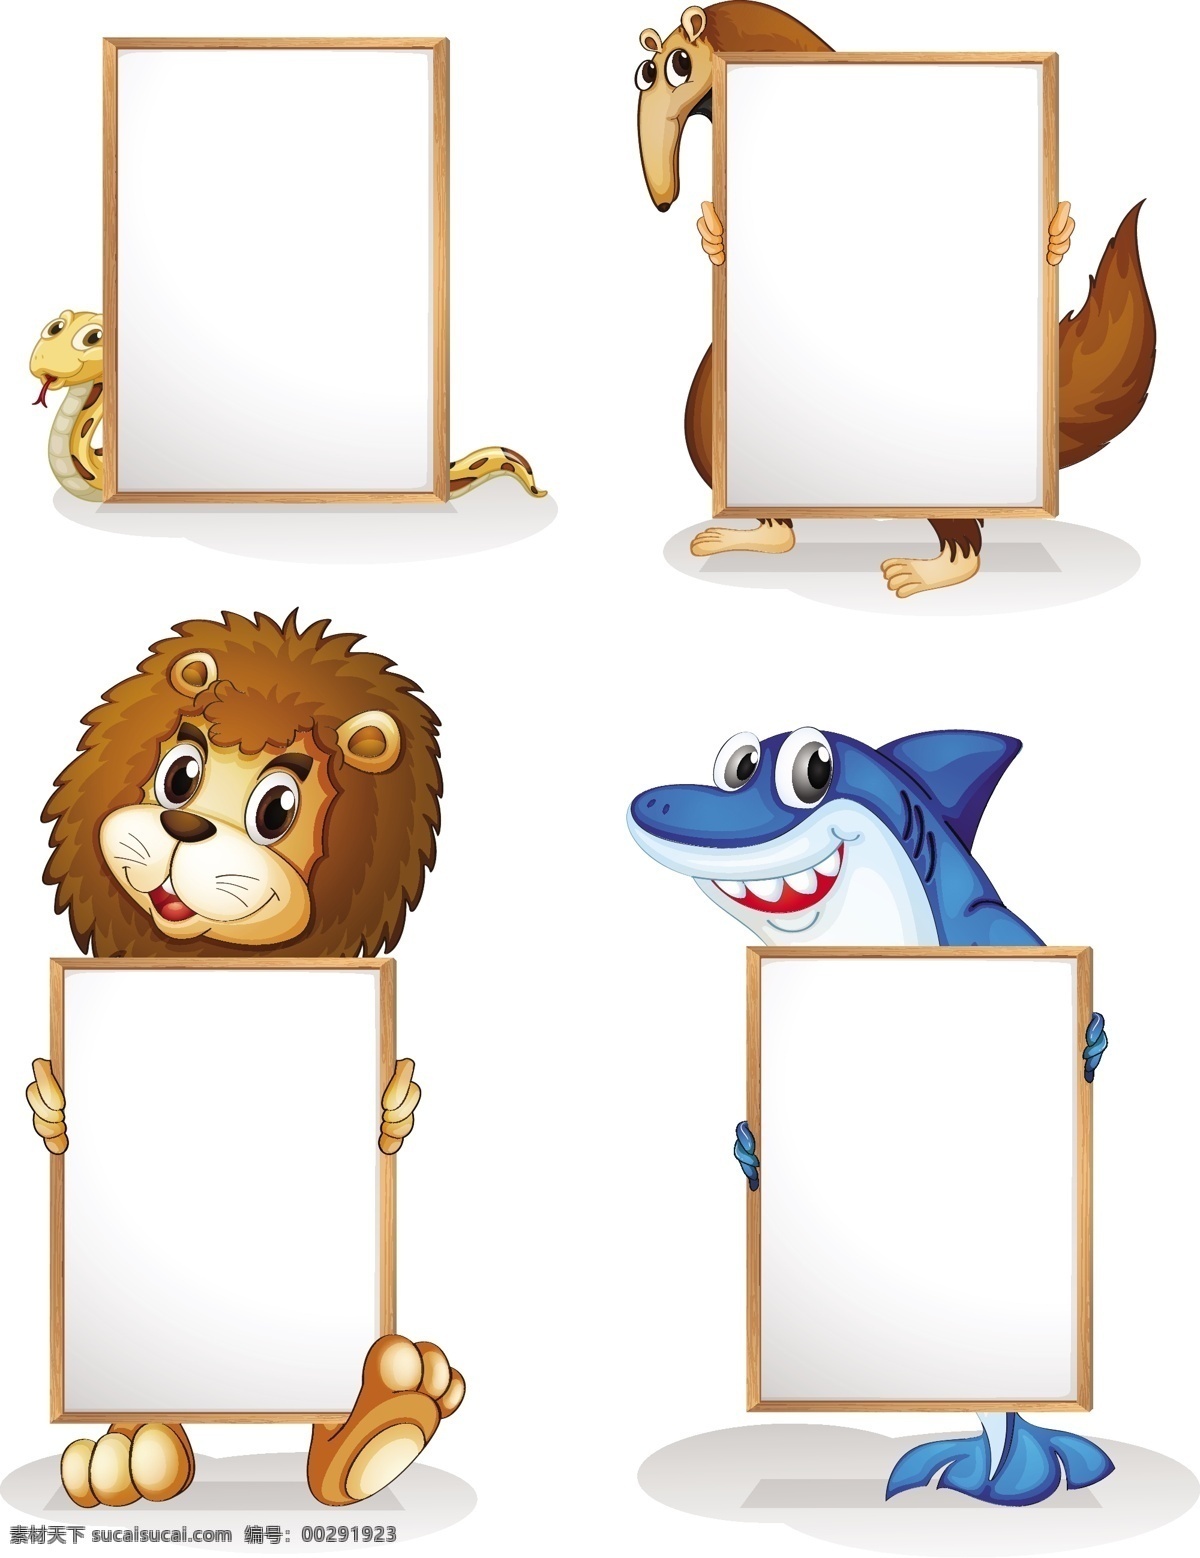 卡通 动物 空白 框 动物和空白框 卡通动物 手绘动物 记事 文本 白板 展板 手 表情 野生动物 动物素材 有趣 卡通动物生物 卡通设计